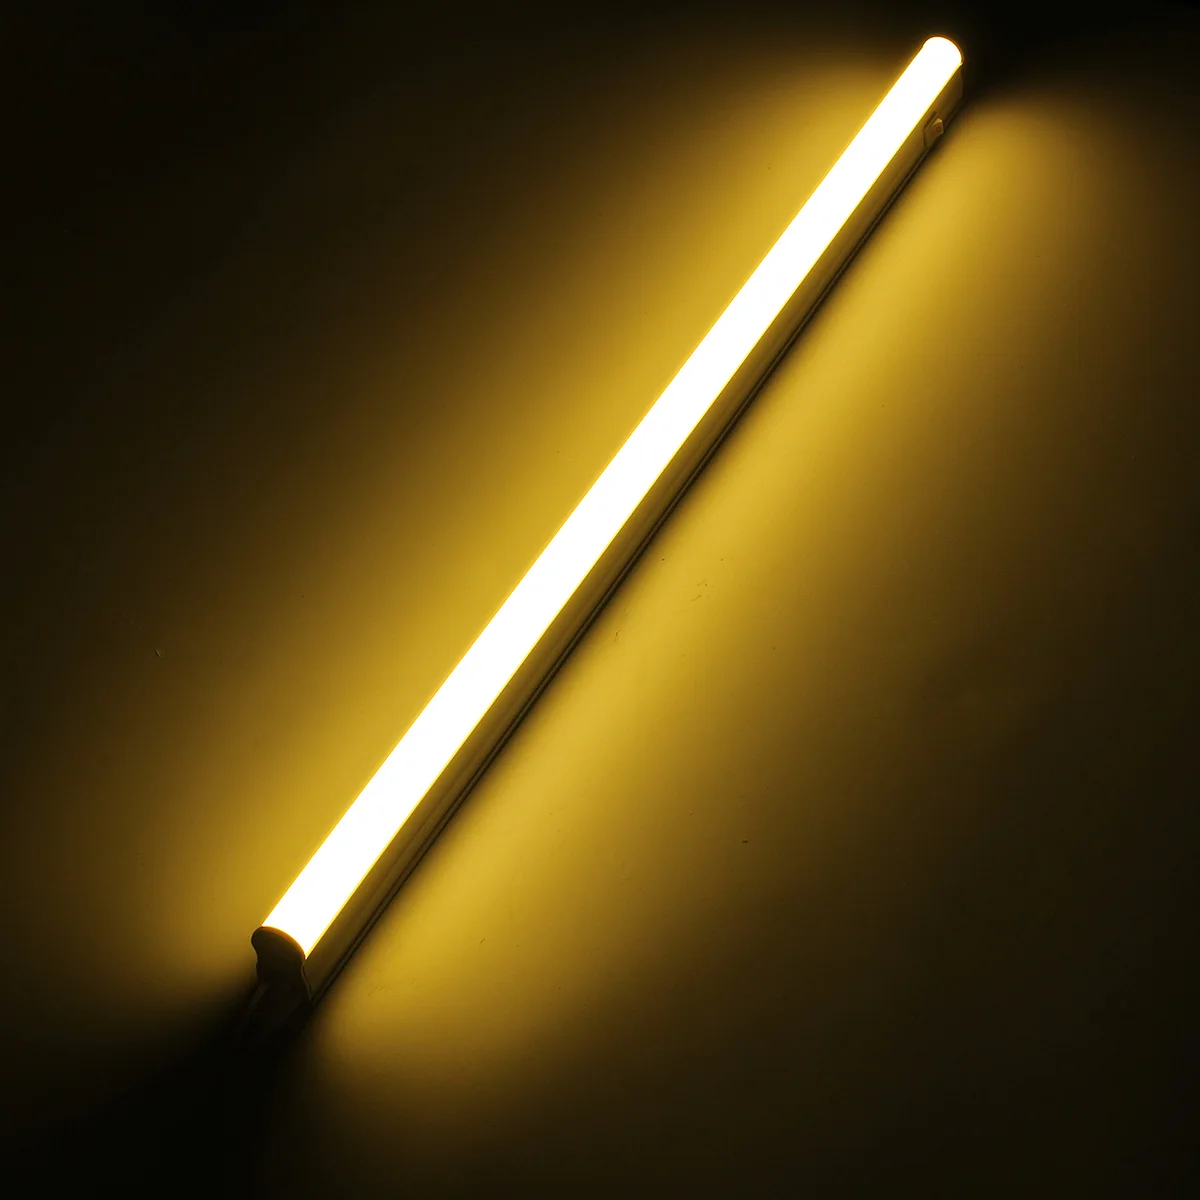 AC85-265V 10 Вт T5 светодиодный светильник лампочка бар светильник с выключателем 2835 SMD 60 см люминесцентная лампа Теплый чистый белый светильник ing - Испускаемый цвет: Тёплый белый